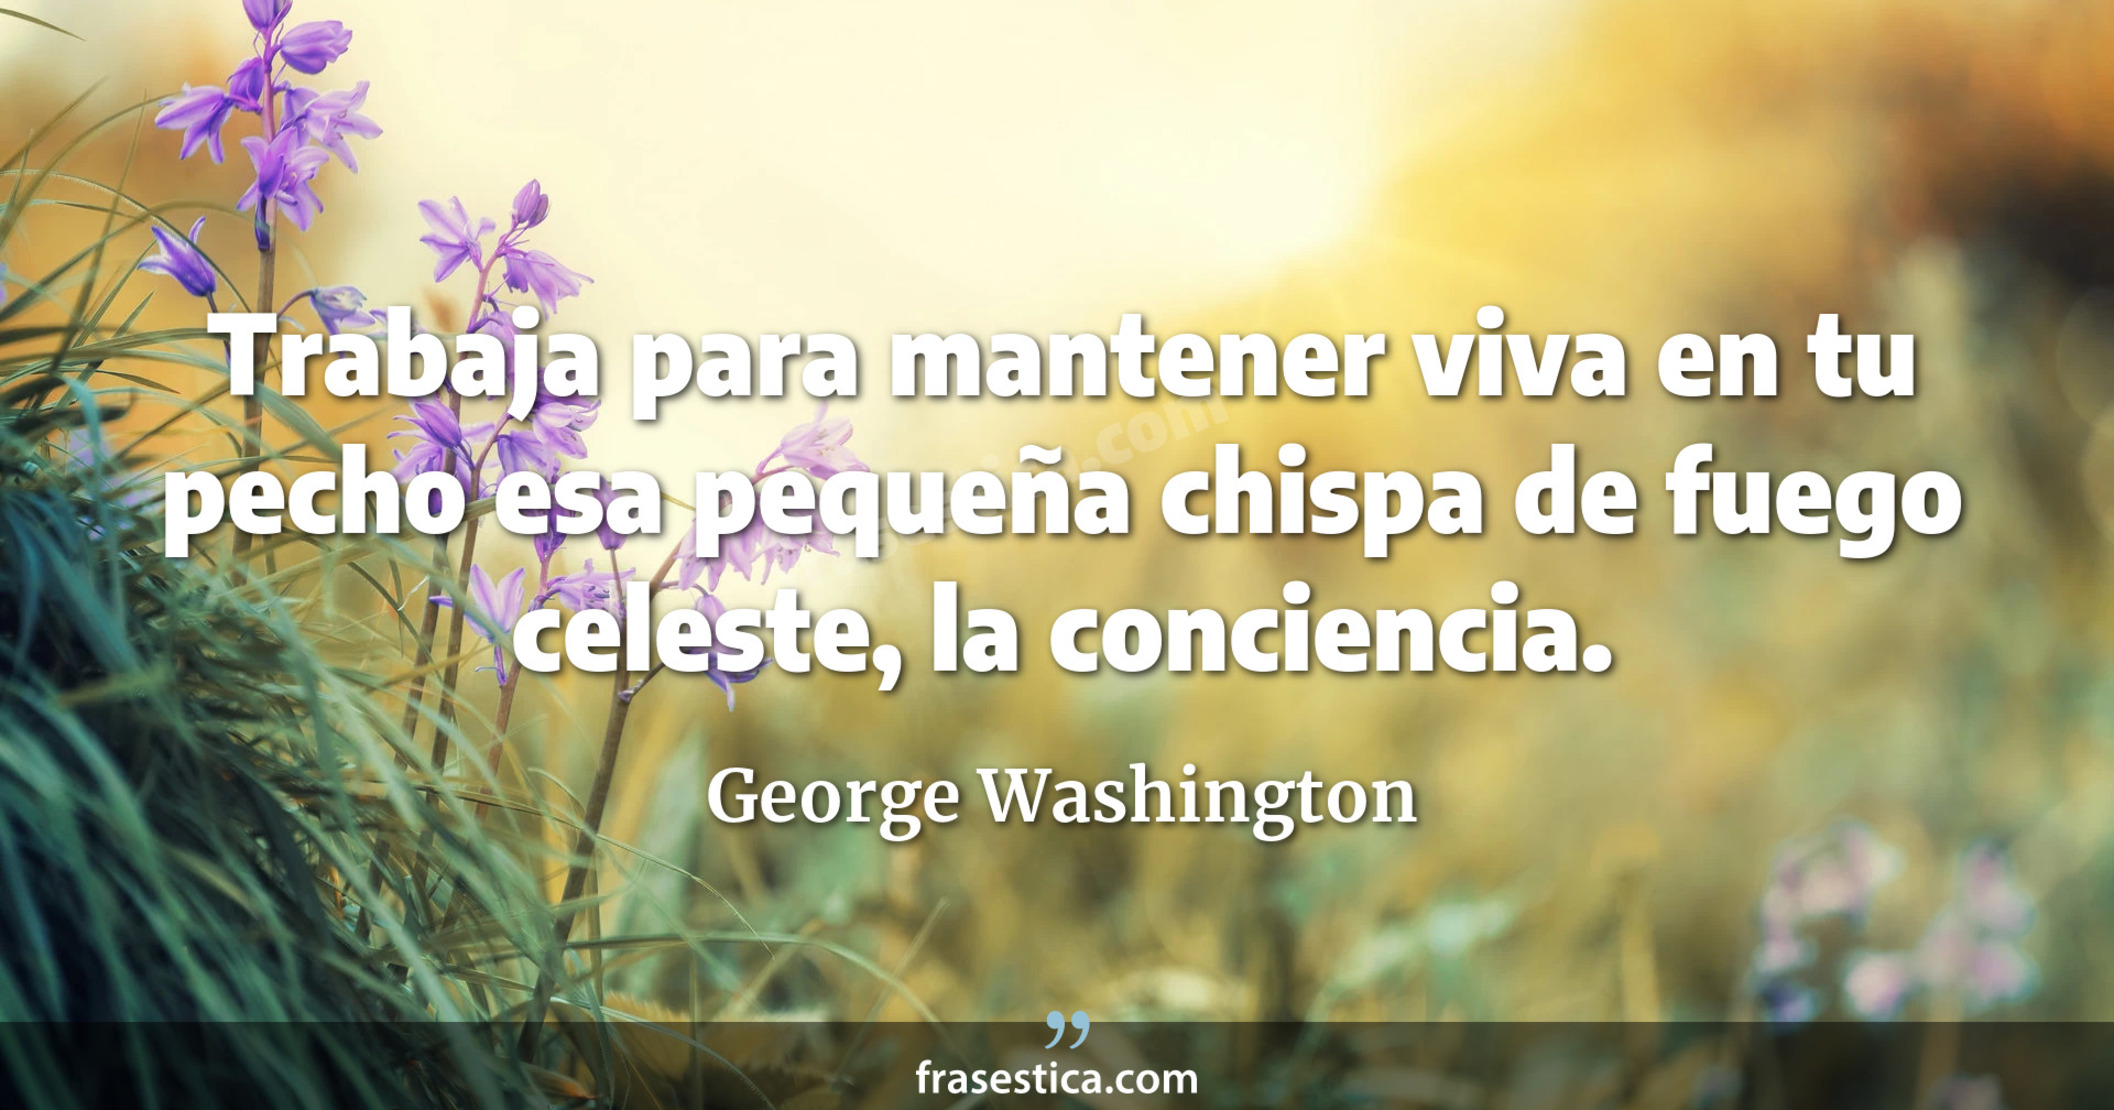 Trabaja para mantener viva en tu pecho esa pequeña chispa de fuego celeste, la conciencia. - George Washington